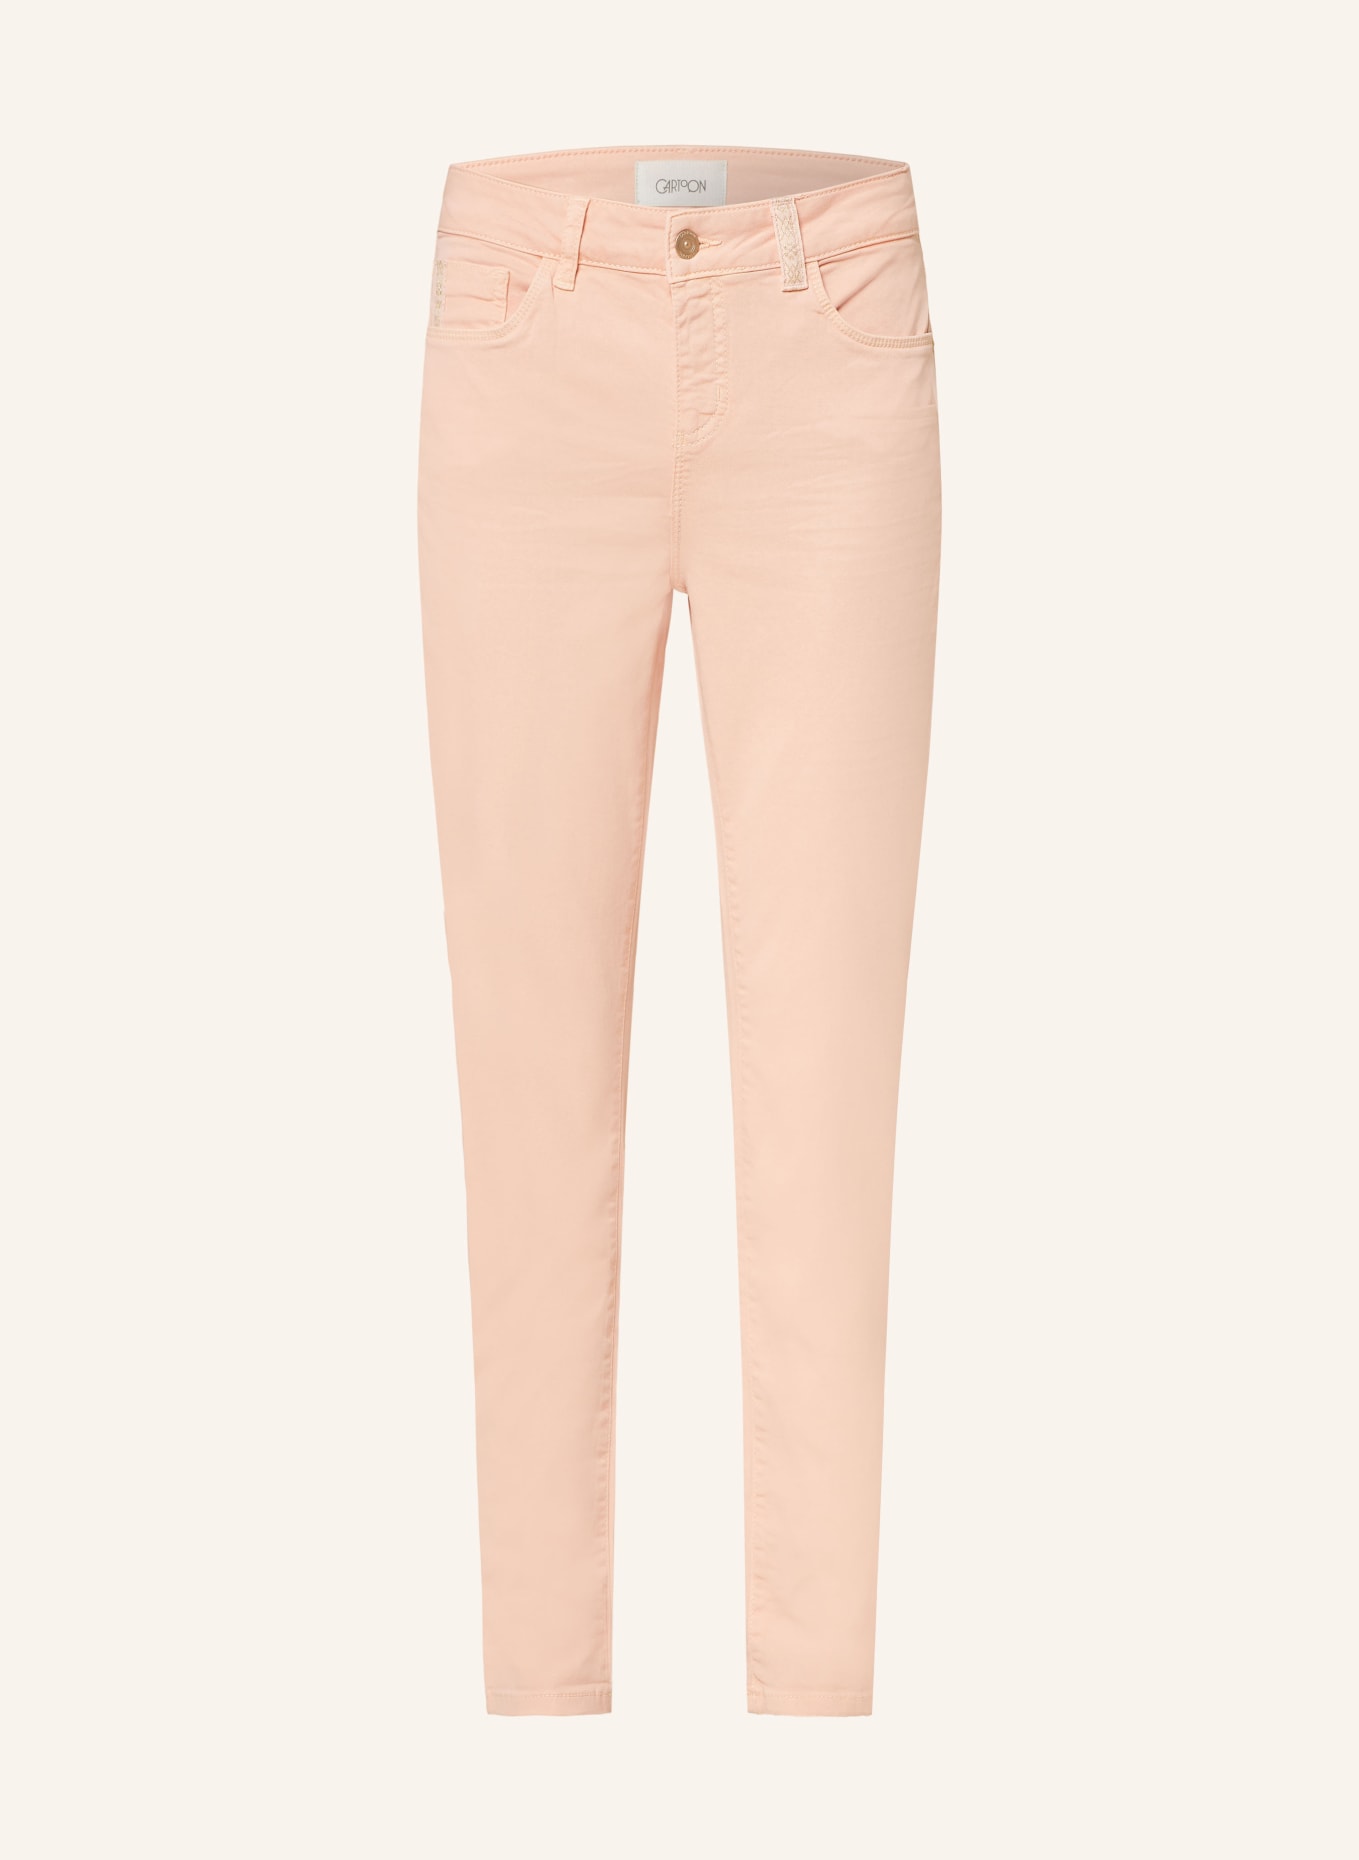 CARTOON Jeans, Color: 4647 Peach Parfait (Image 1)